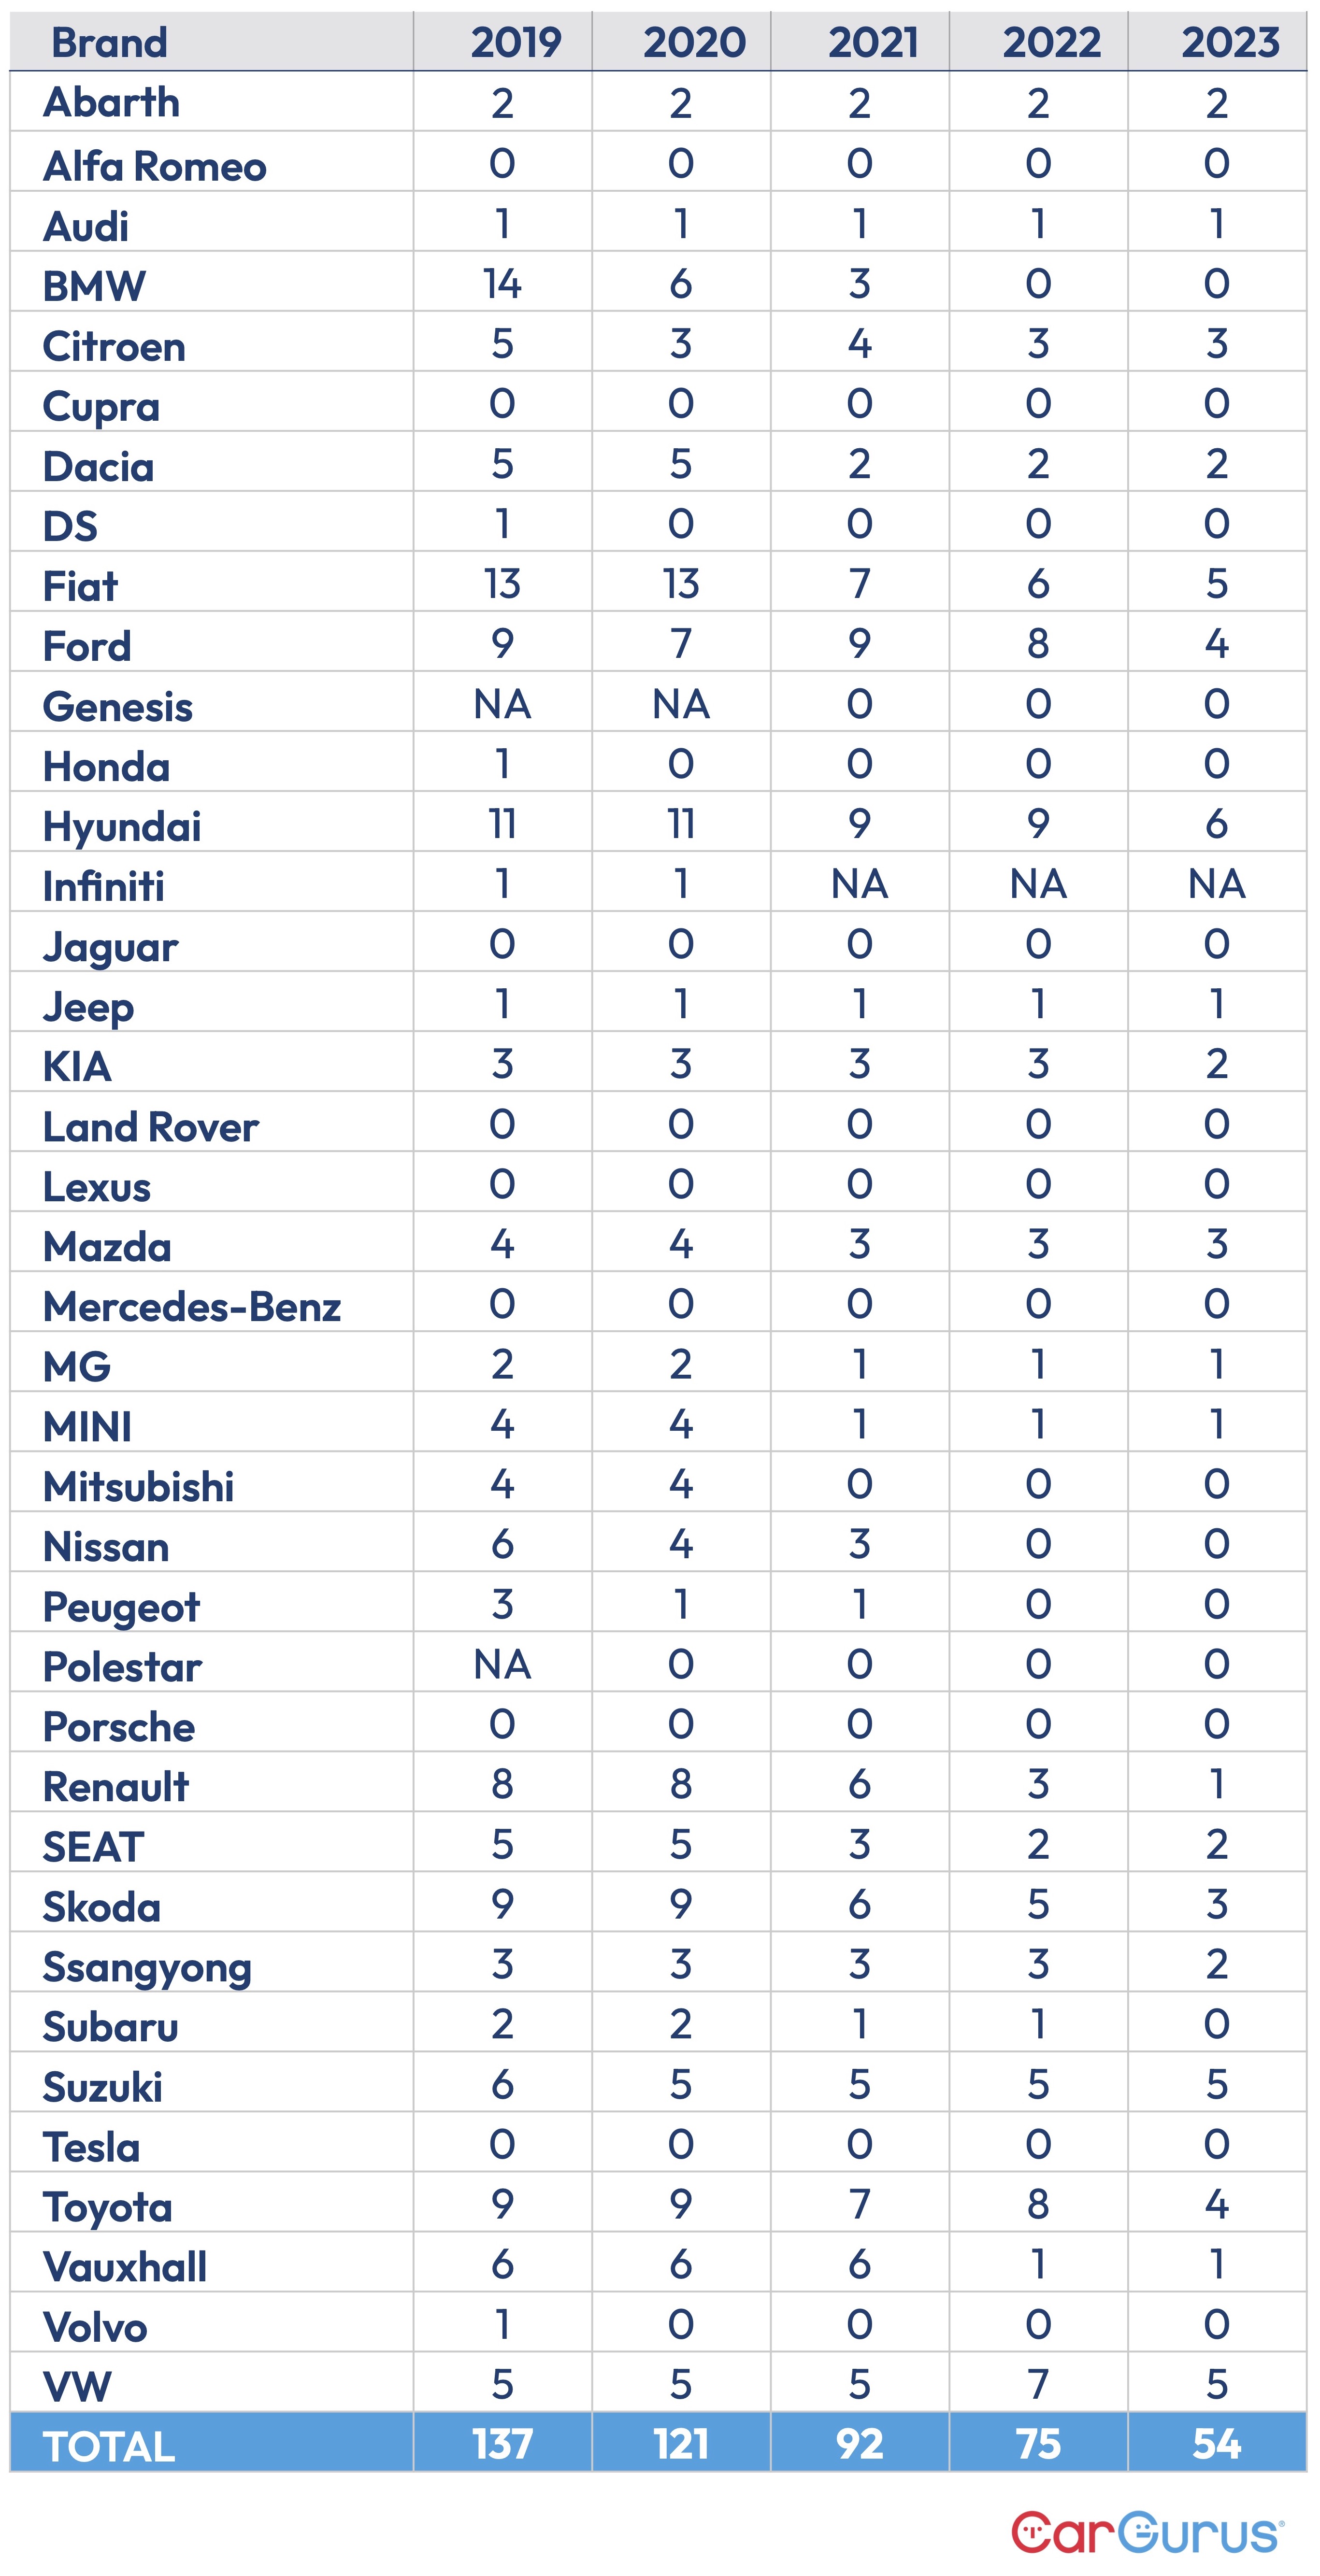 CarGurus UK Manual handbrake 2023 data table vs total